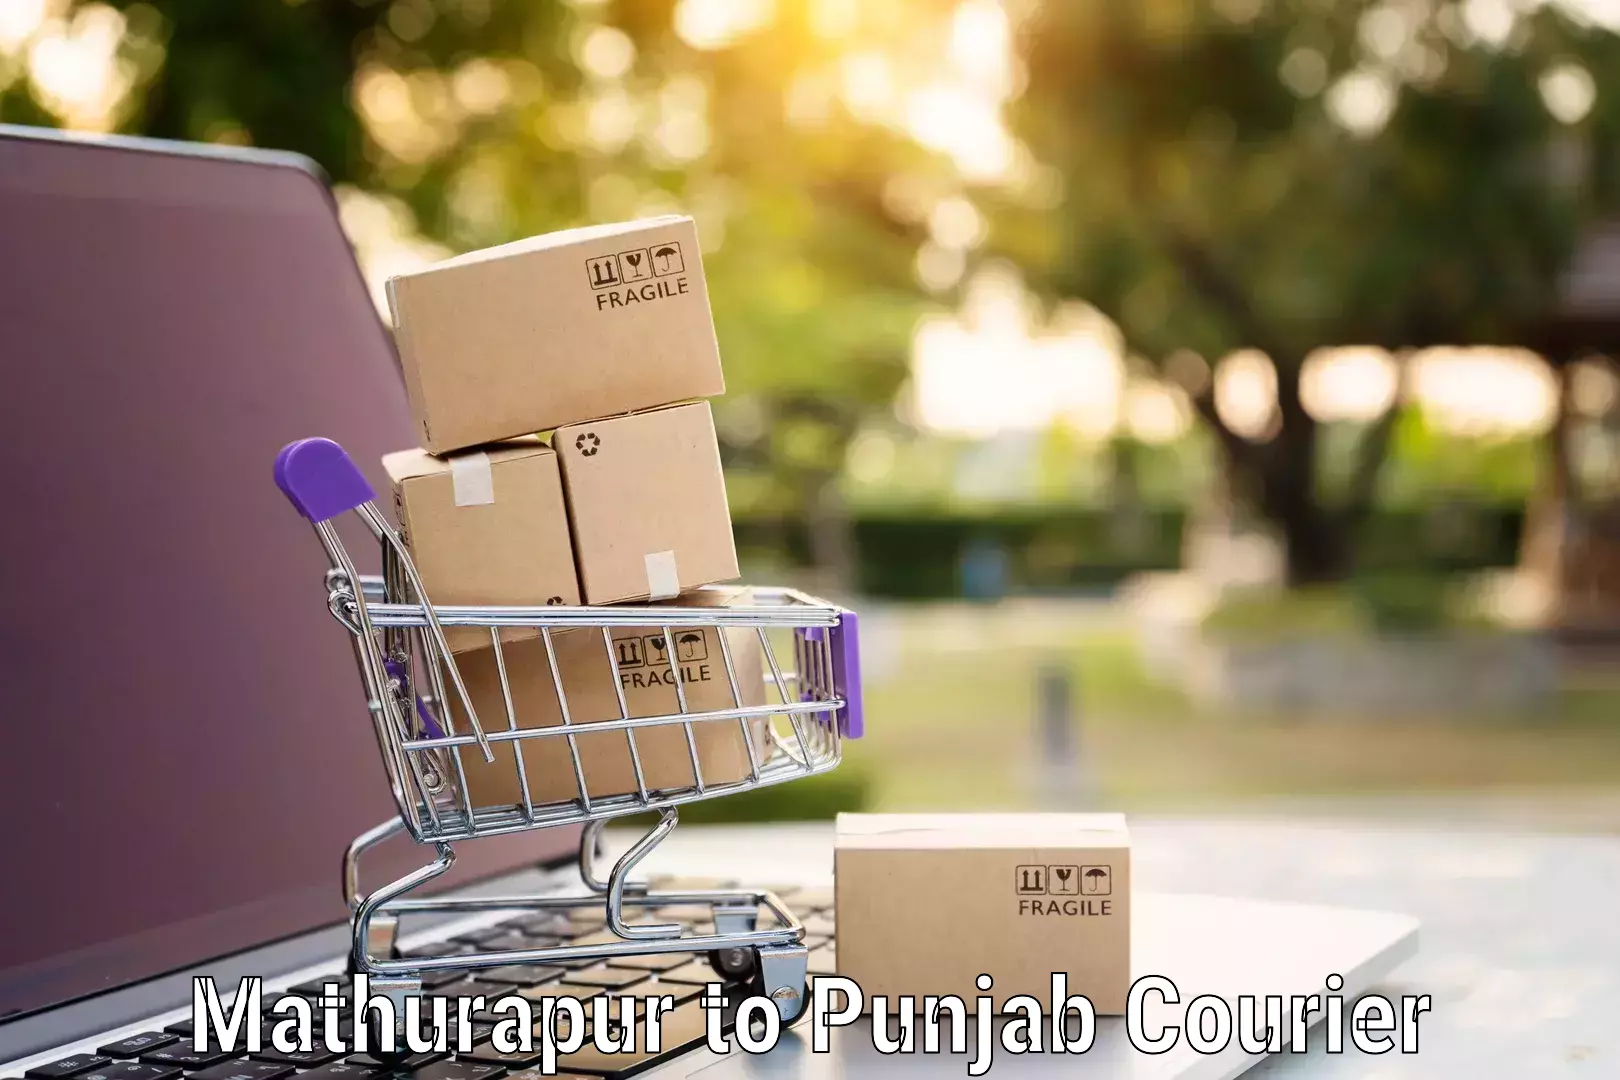 Furniture transport service in Mathurapur to Punjab